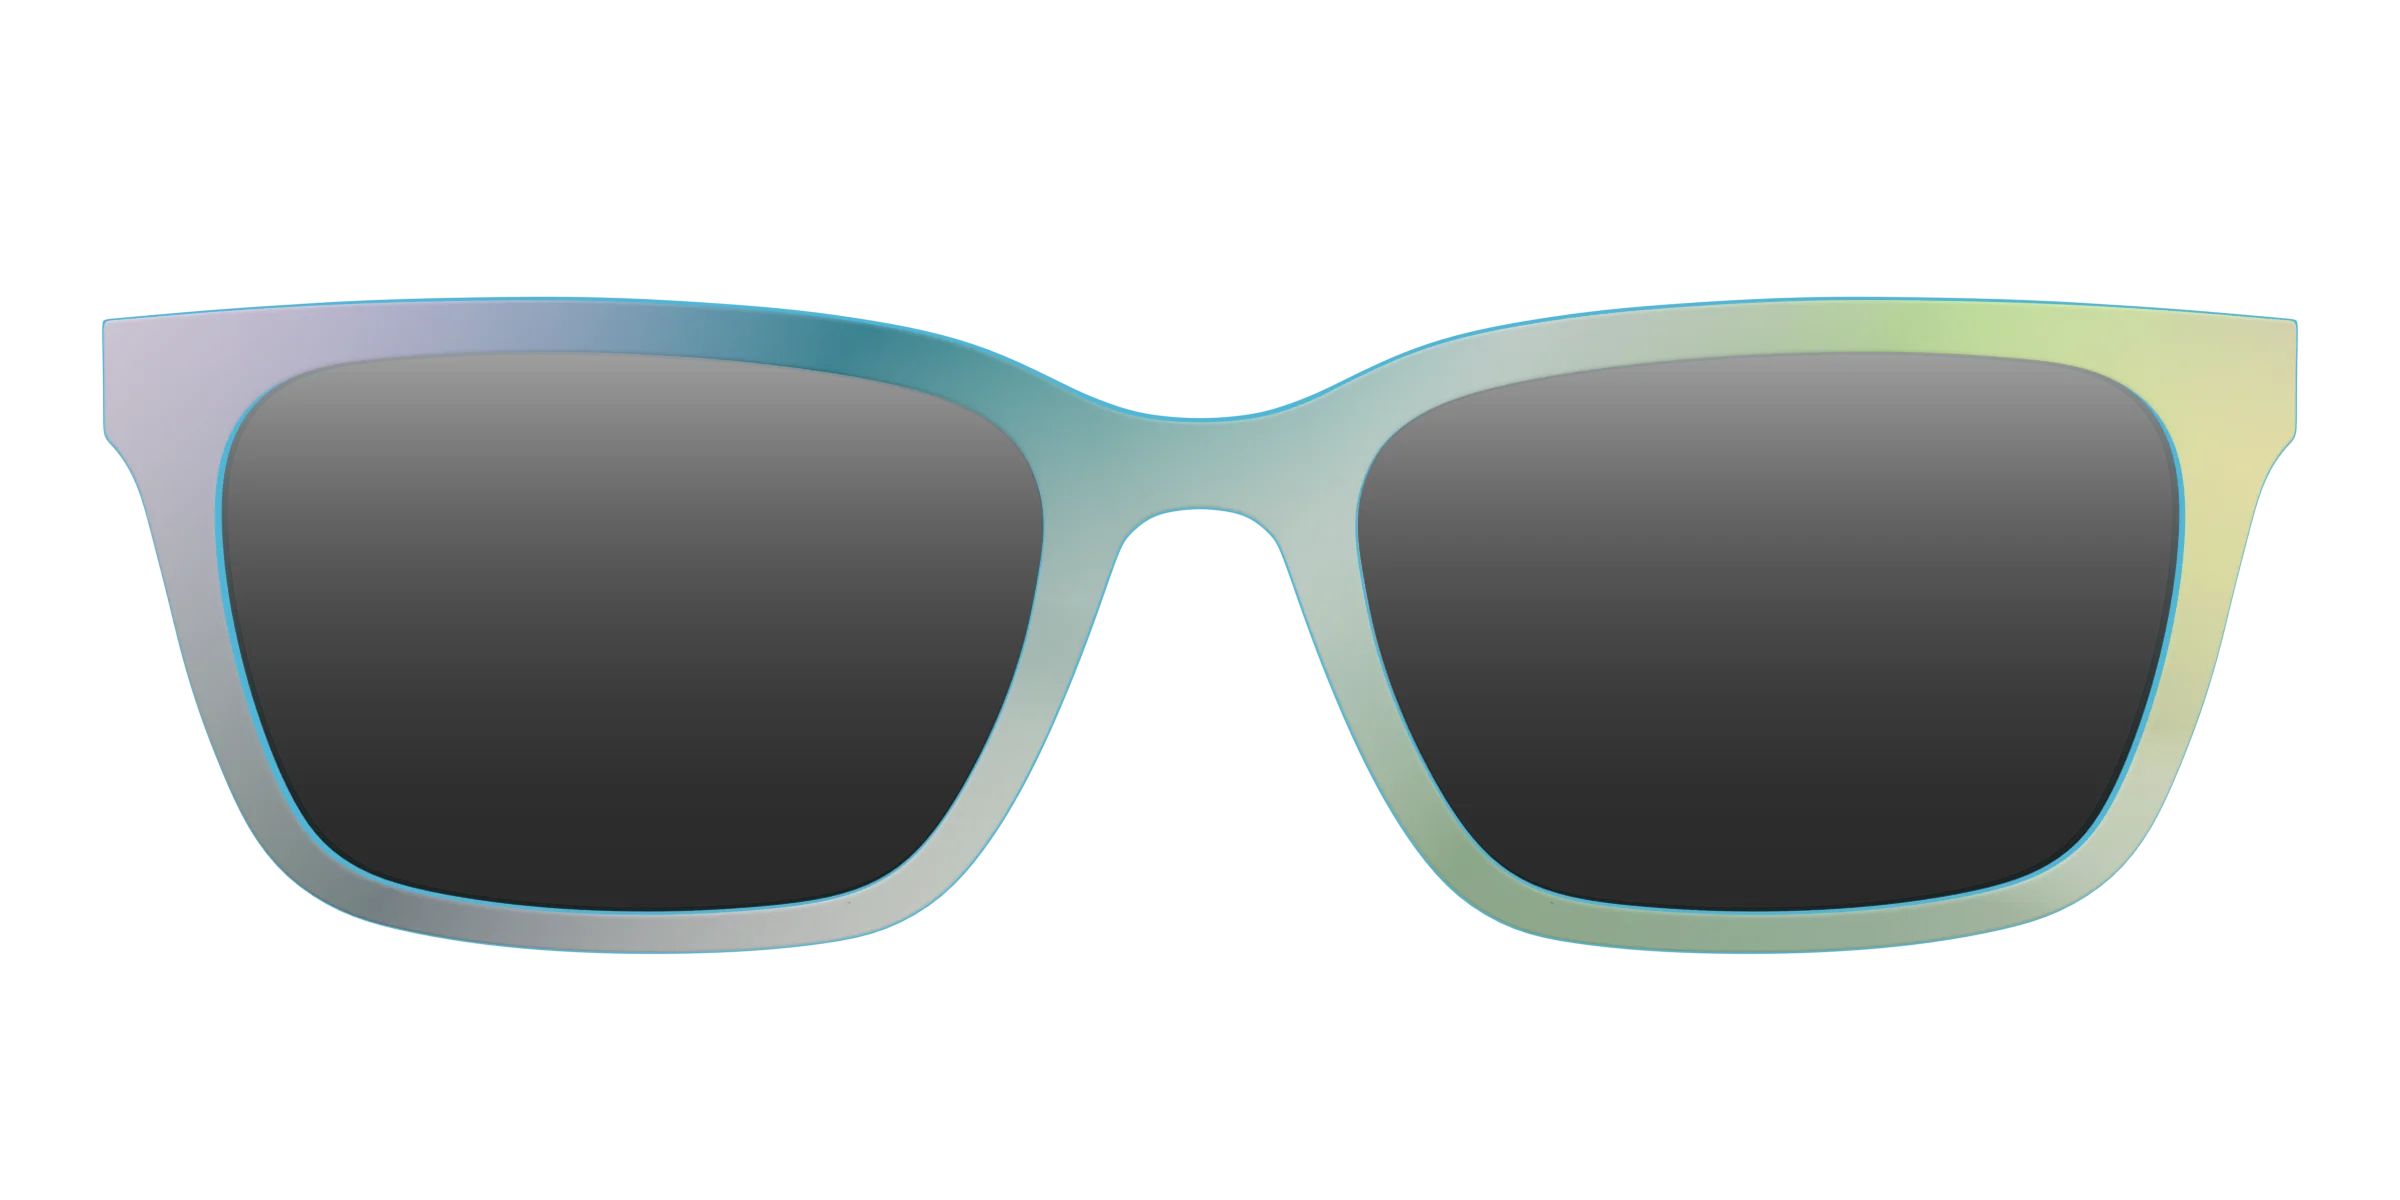 The Iridescent Sun Top | Pair Eyewear